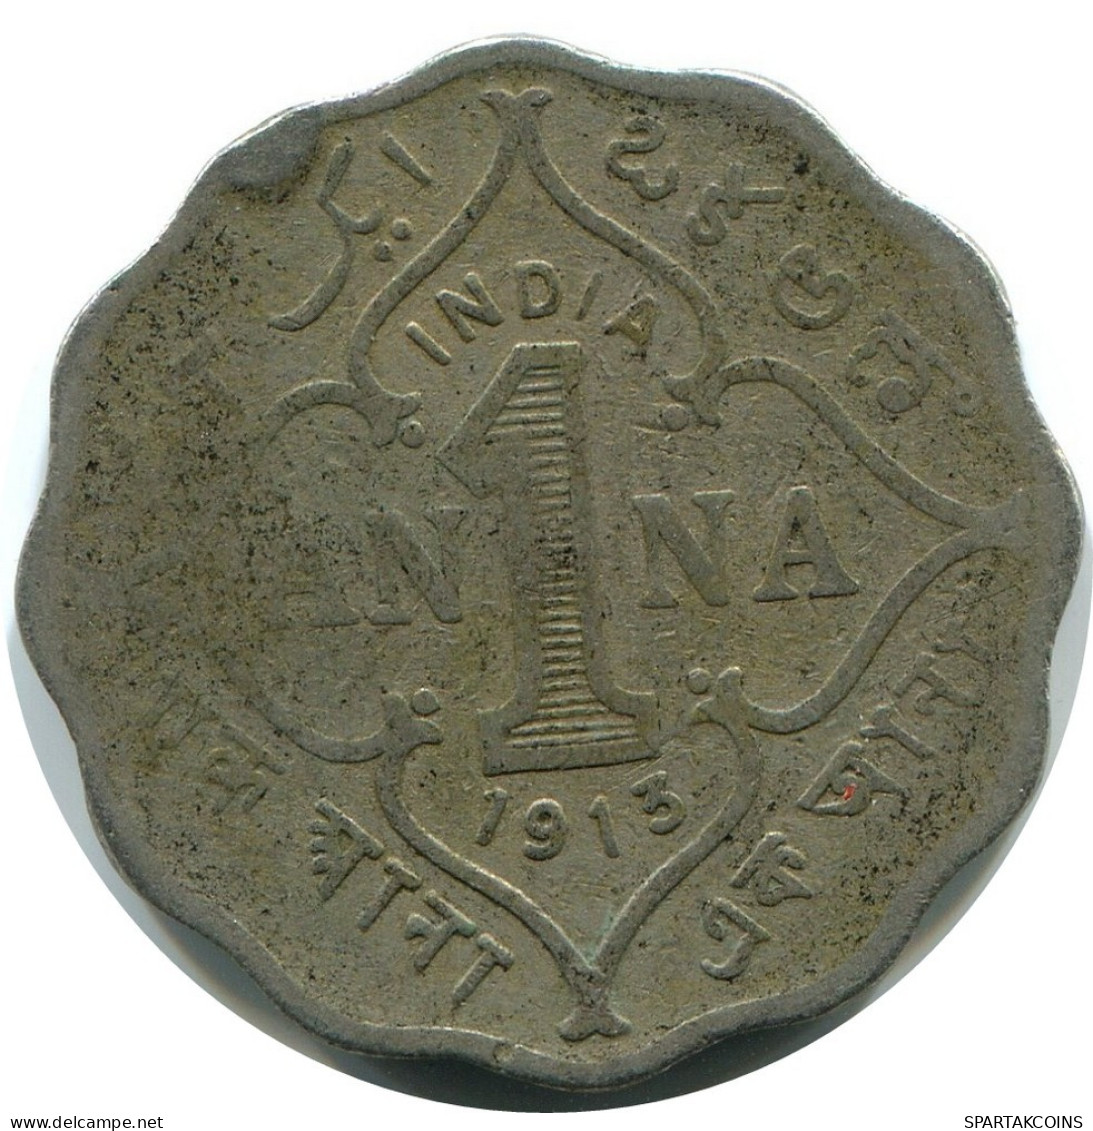 1 ANNA 1913 INDIA-BRITISH Coin #AY964.U.A - India